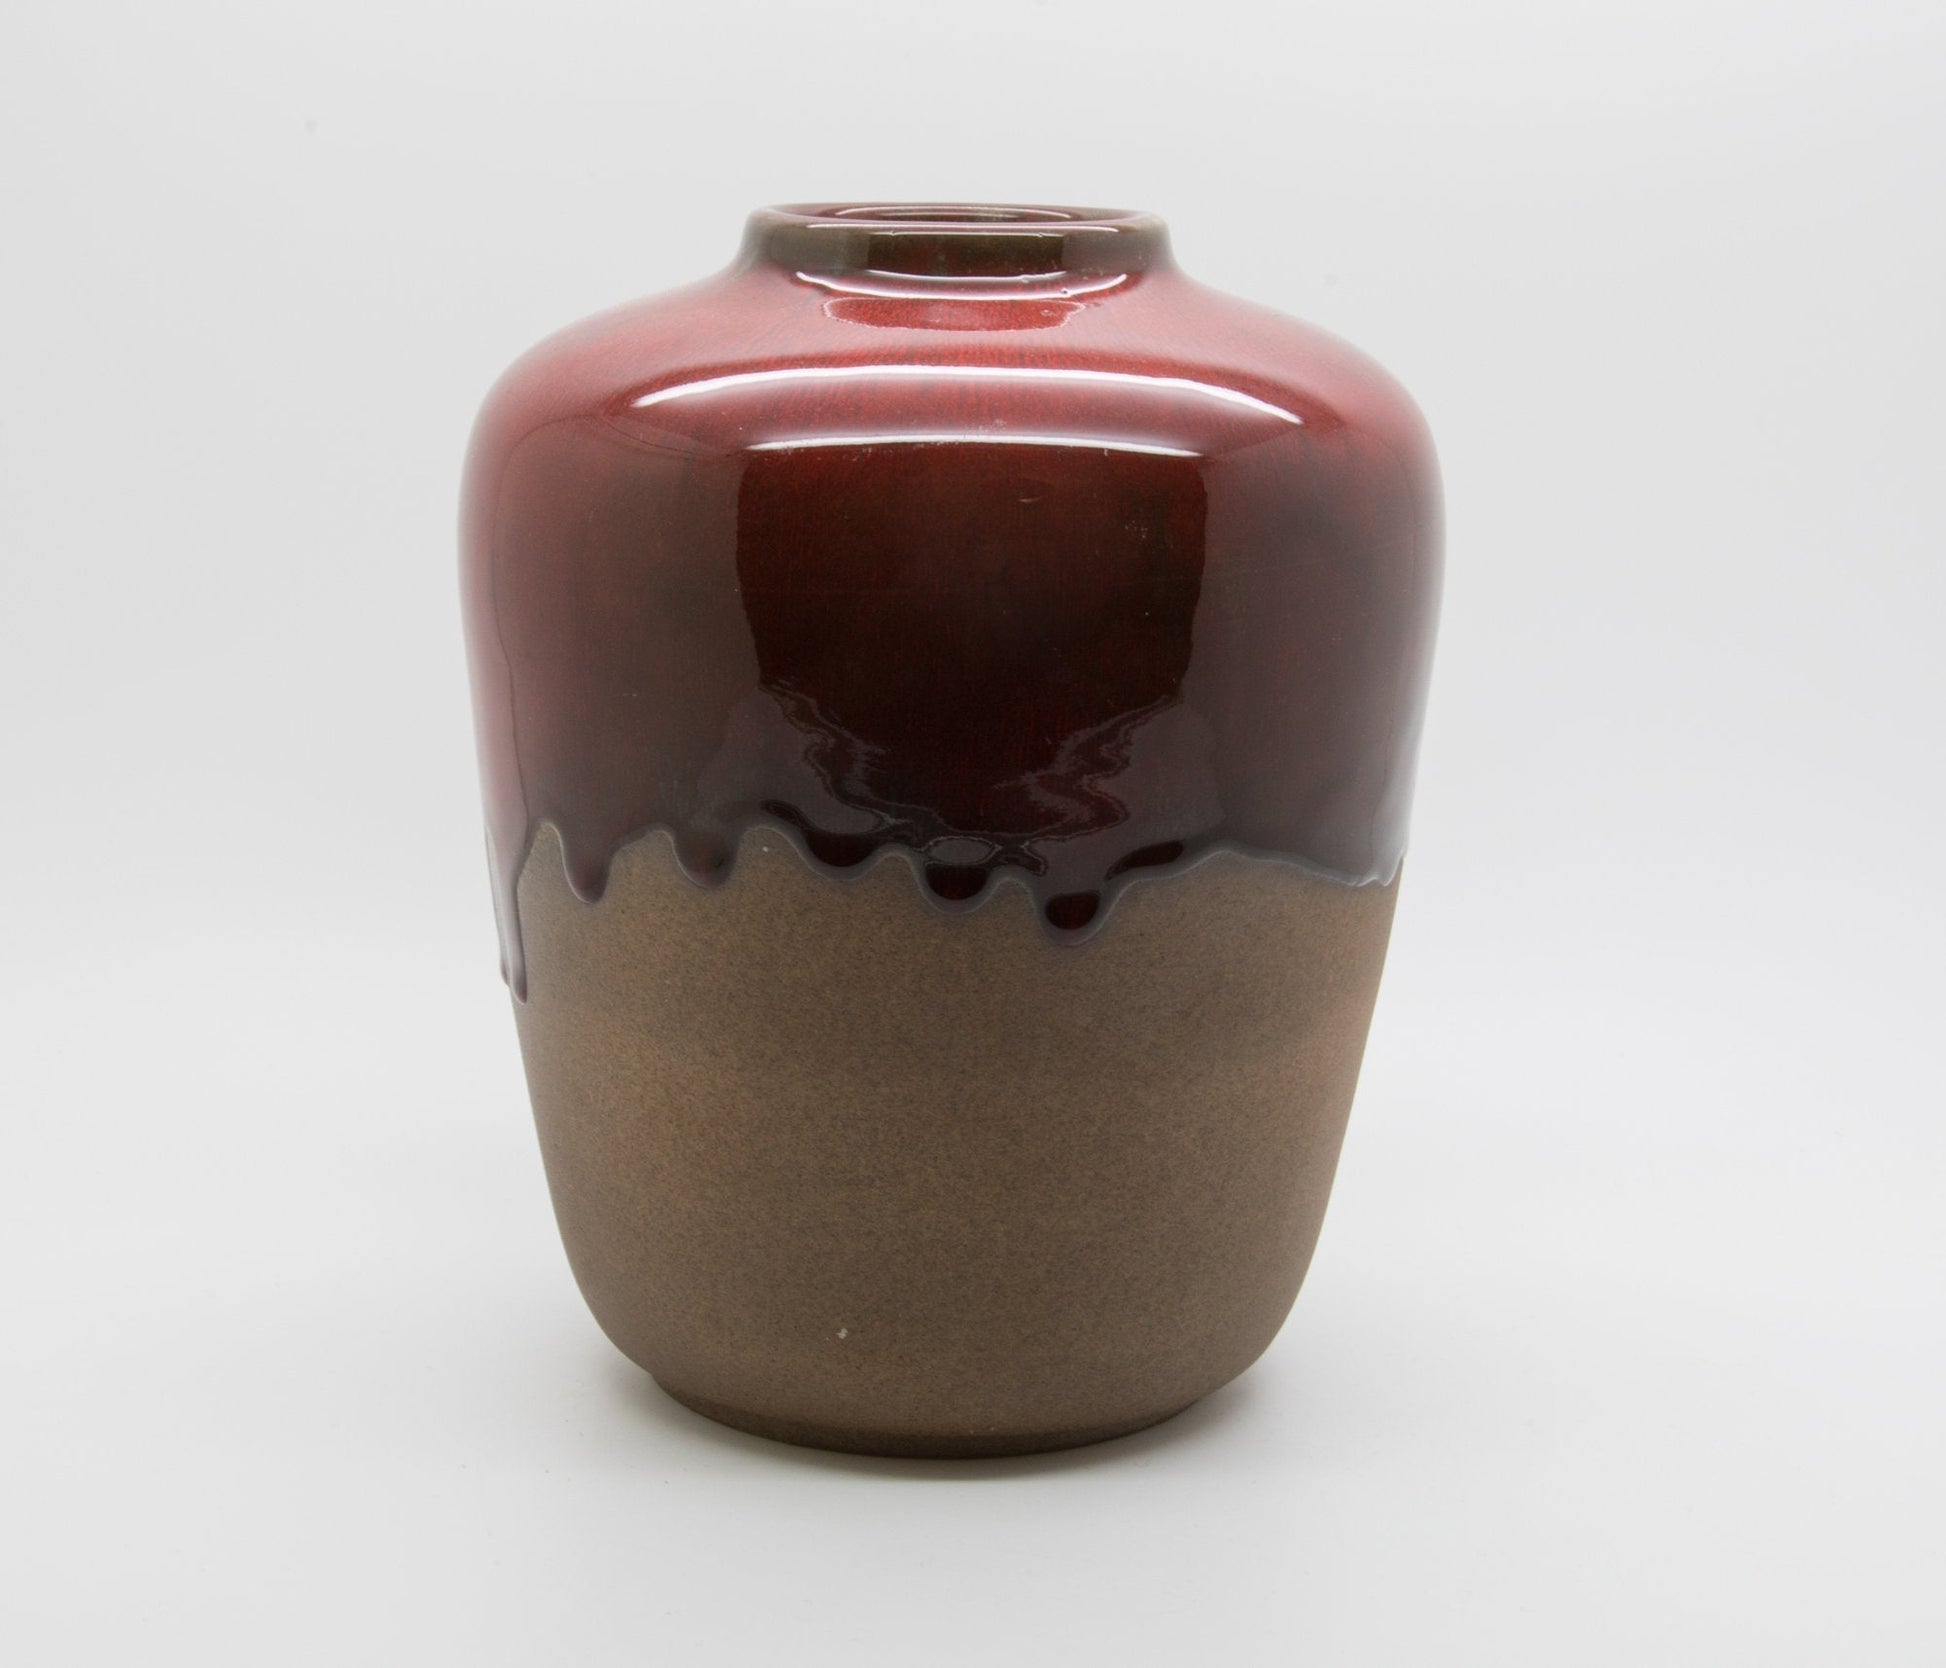 Nymølle GUNNAR NYLUND Red Oxblood Drip Glazed Stoneware Vase Mollaris.com 